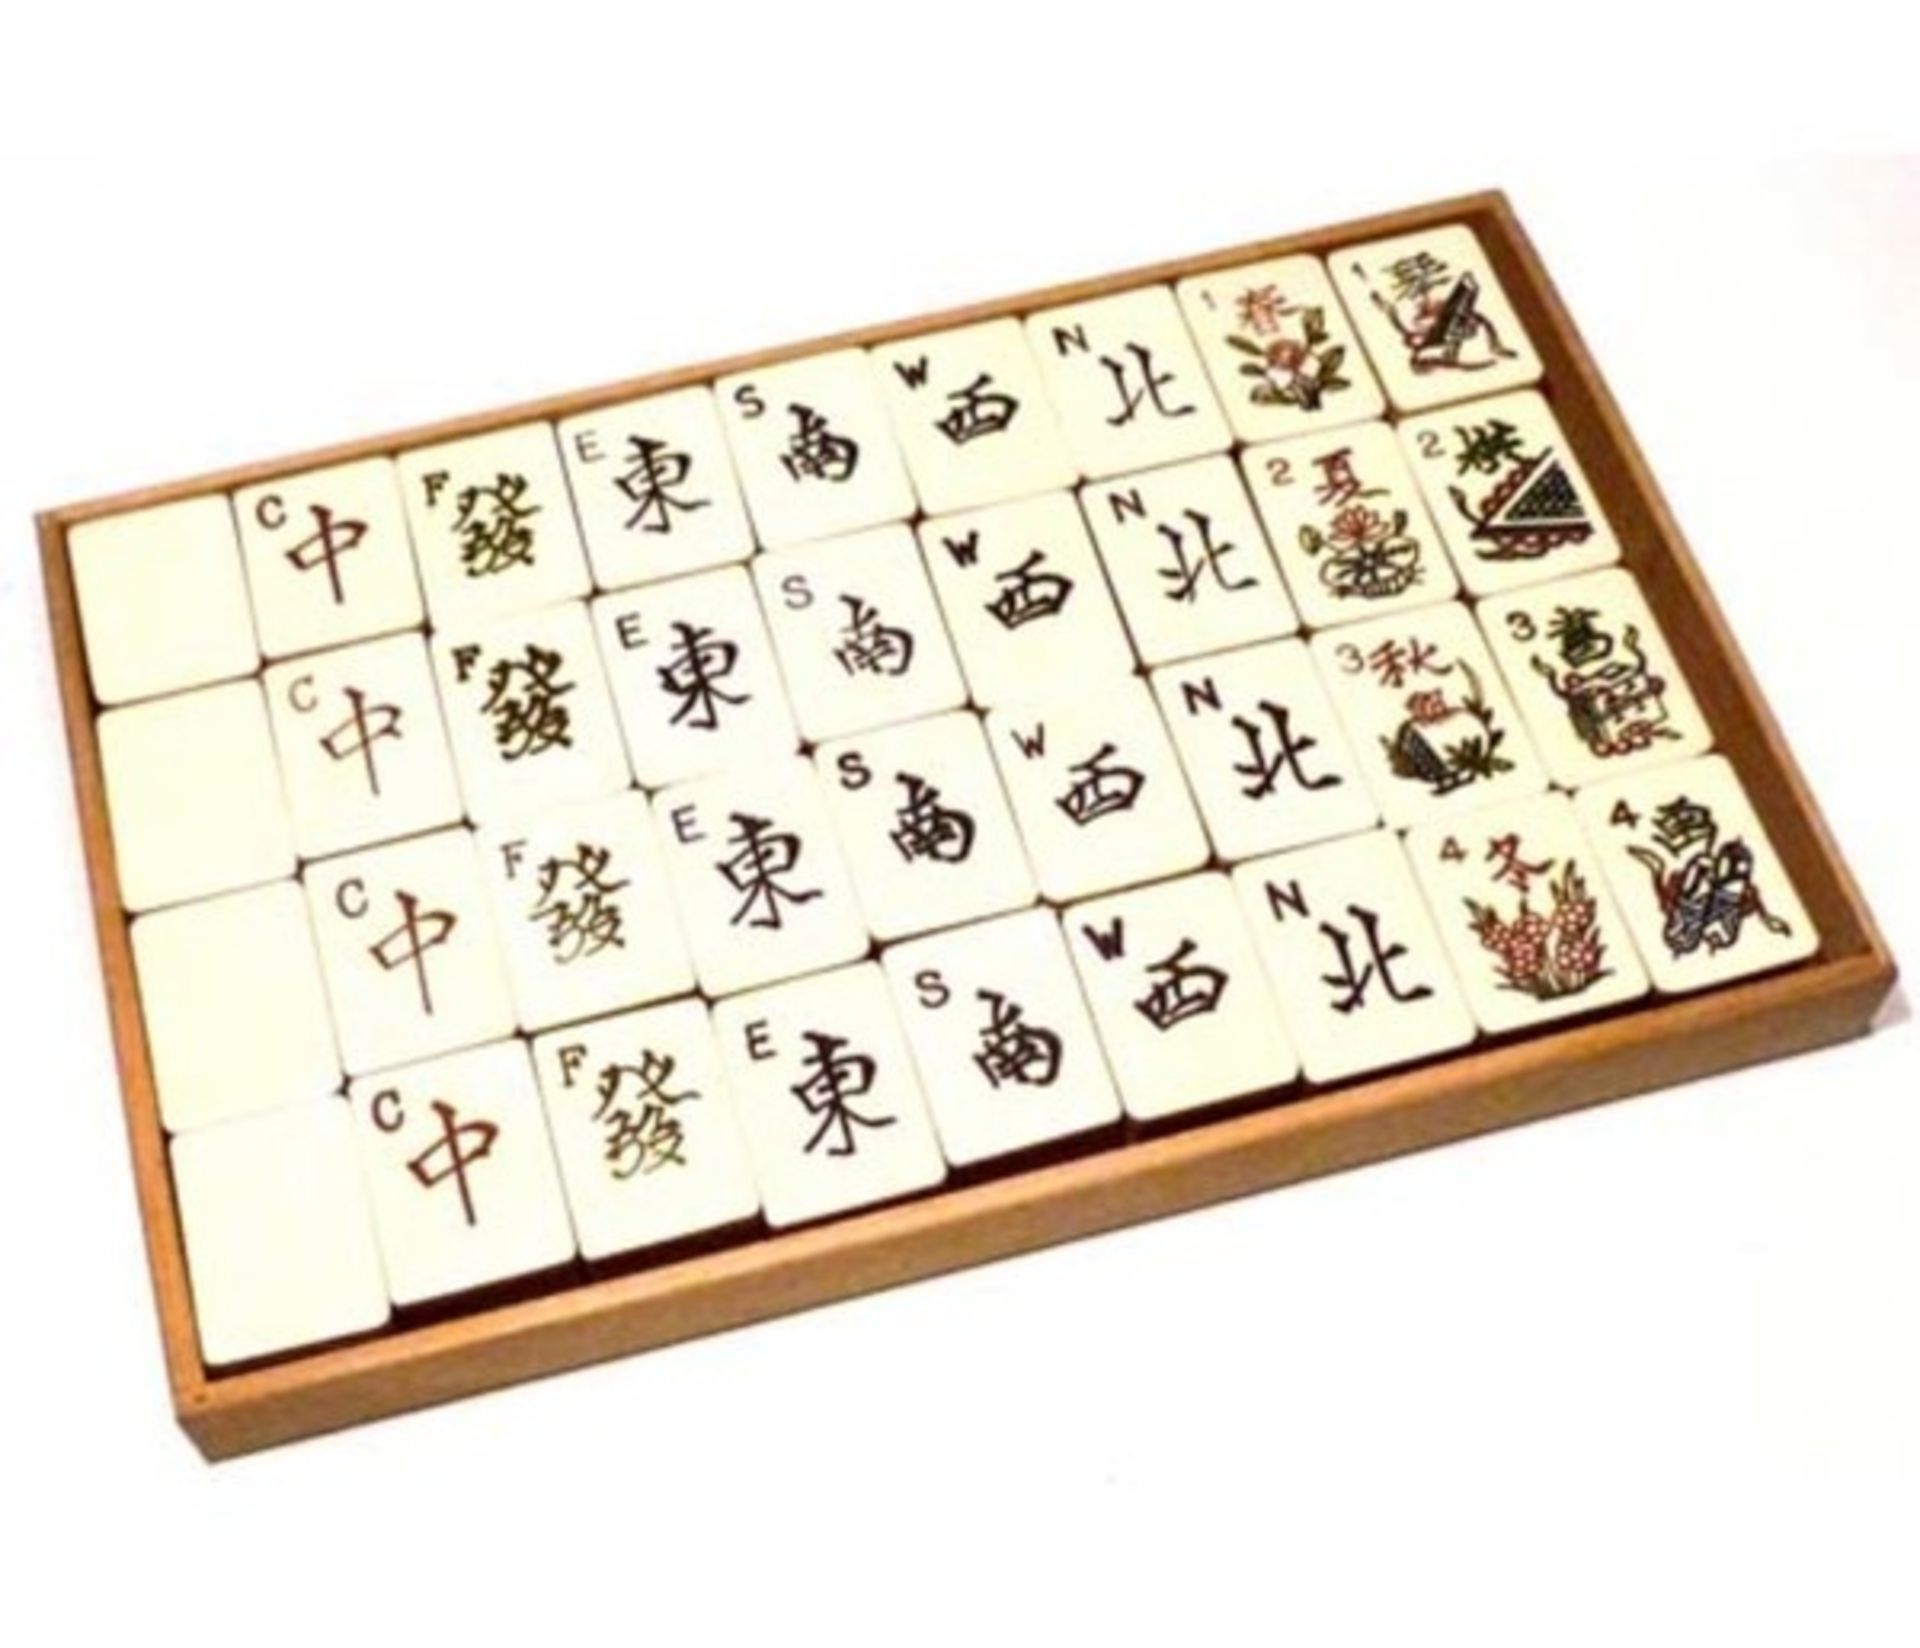 (Mahjong) Mahjong Europees, Golconda Duitsland, 1925 - Bild 7 aus 14